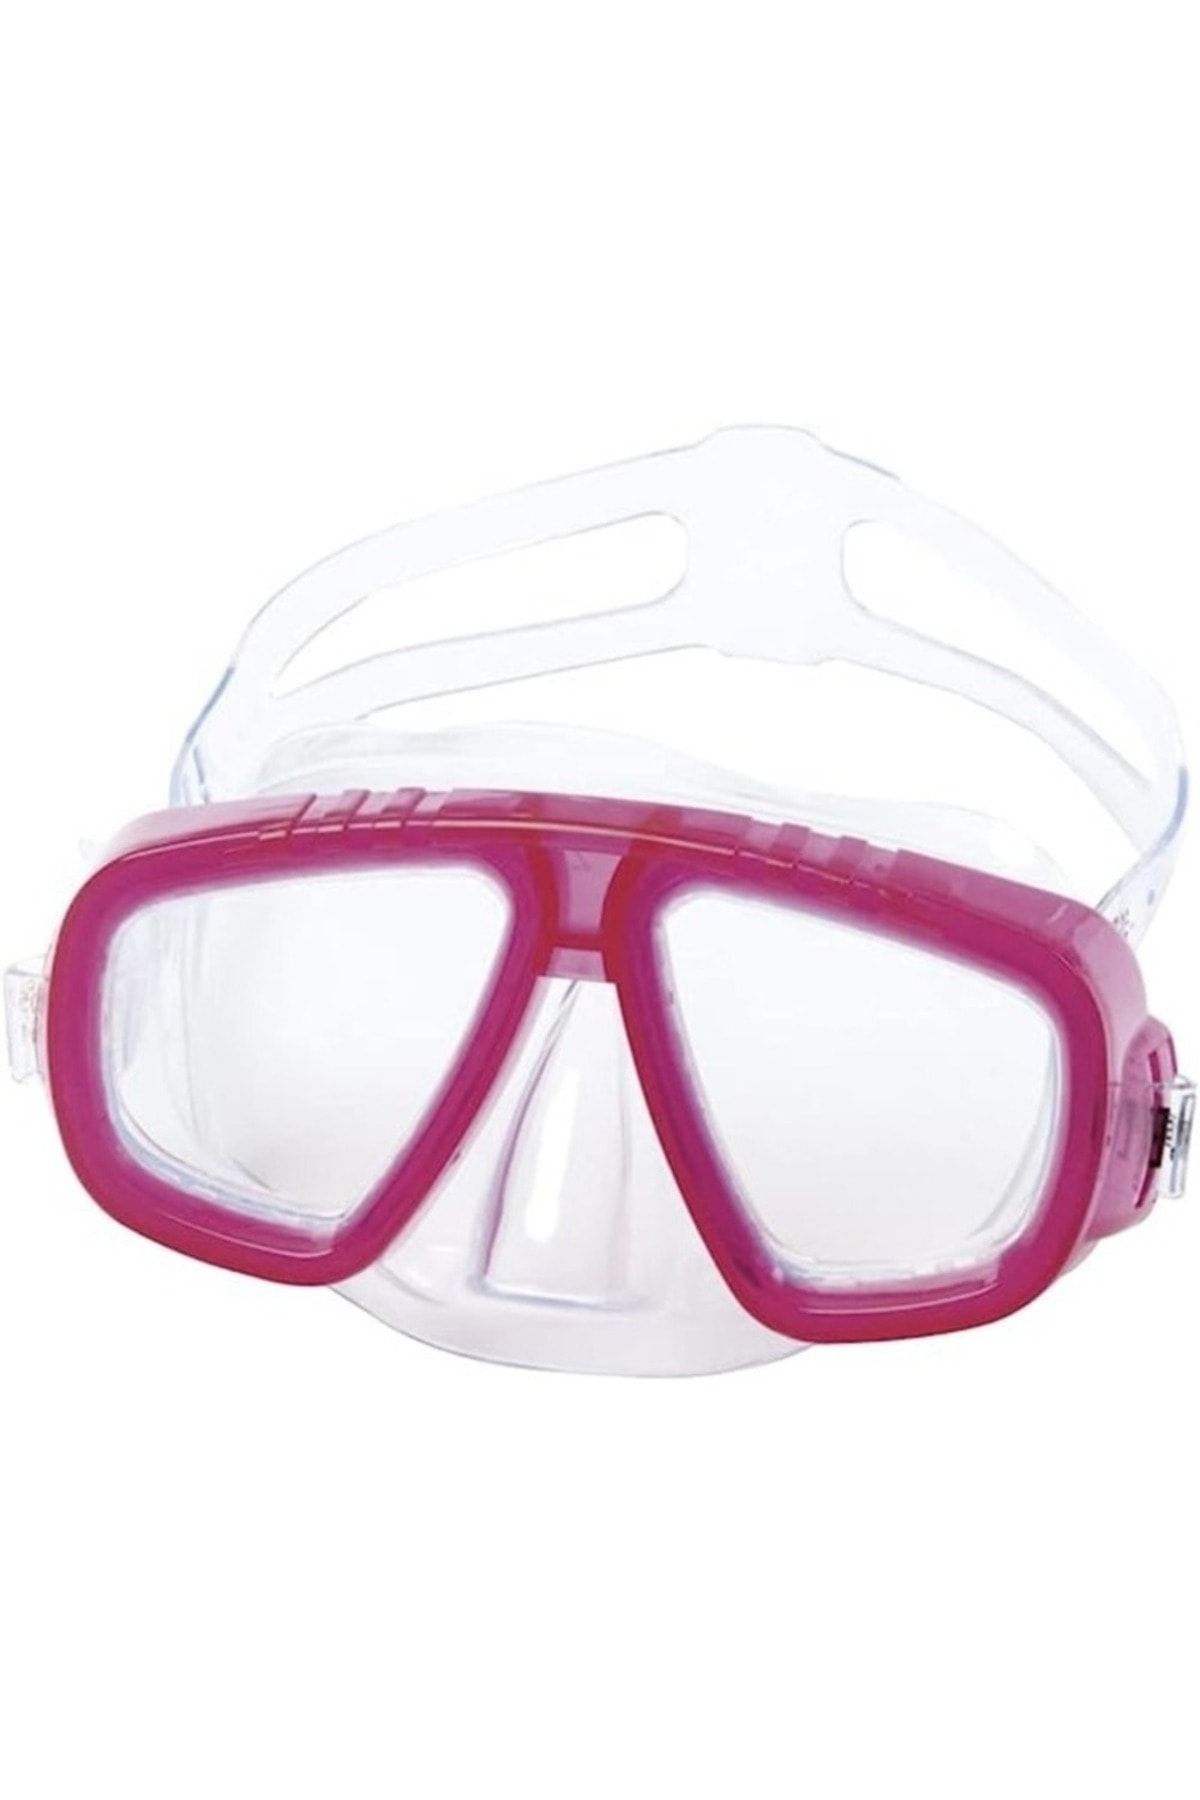 Efna Store Bestway Çocuk Dalış Gözlüğü 3-7 Yaş Arası Uv Korumalı Polikarbon Lensler Ayarlanabilir Baş Lastiği